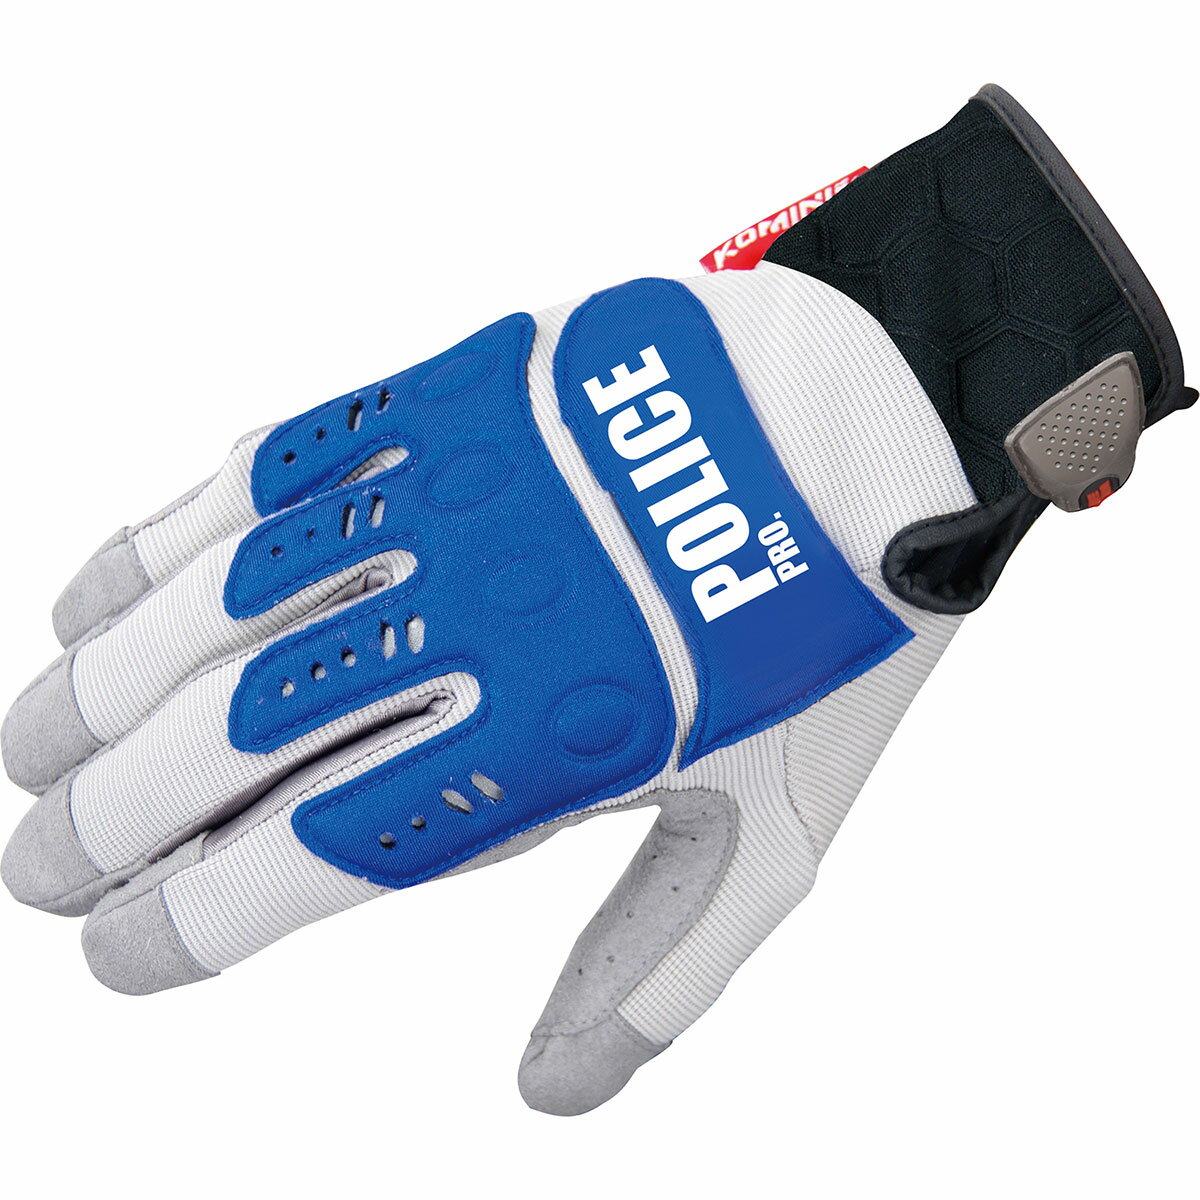 コミネ KOMINE バイク用 グローブ Gloves GK-134 インストラクターグローブプロ EX グレー ブルー 灰 青 XLサイズ 06-134P/GRY/BL/XL